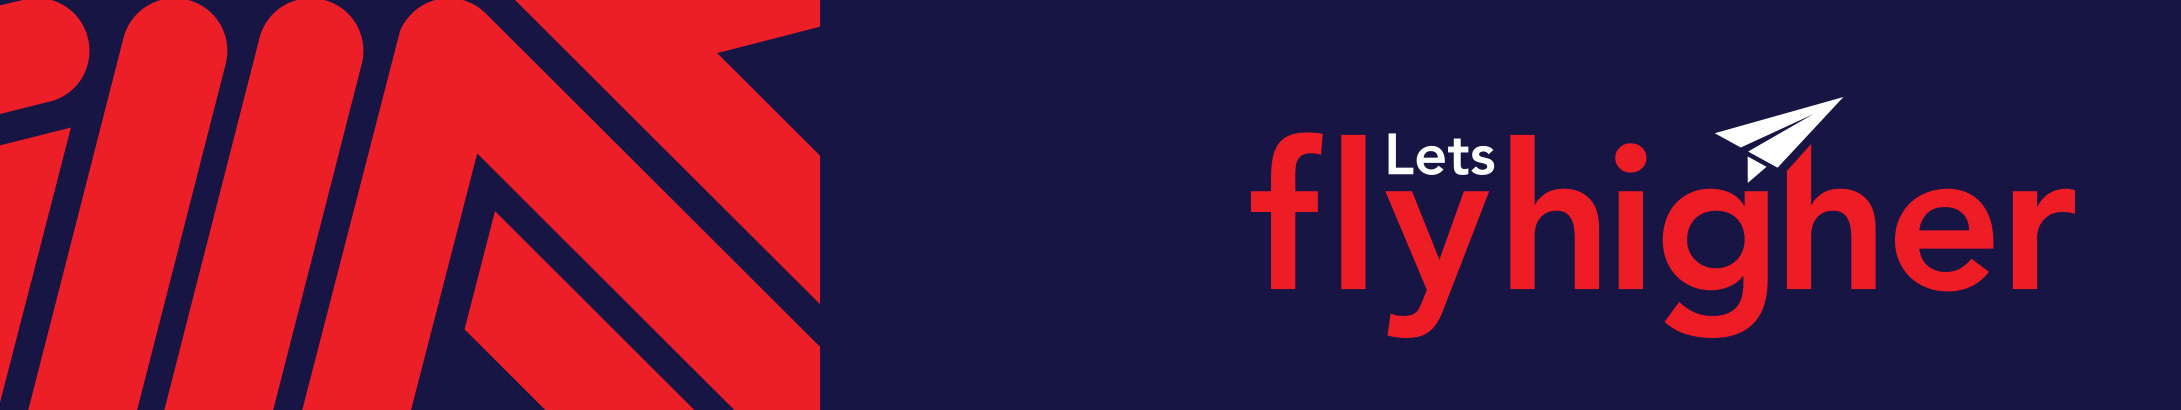 Firejets Design's profile banner